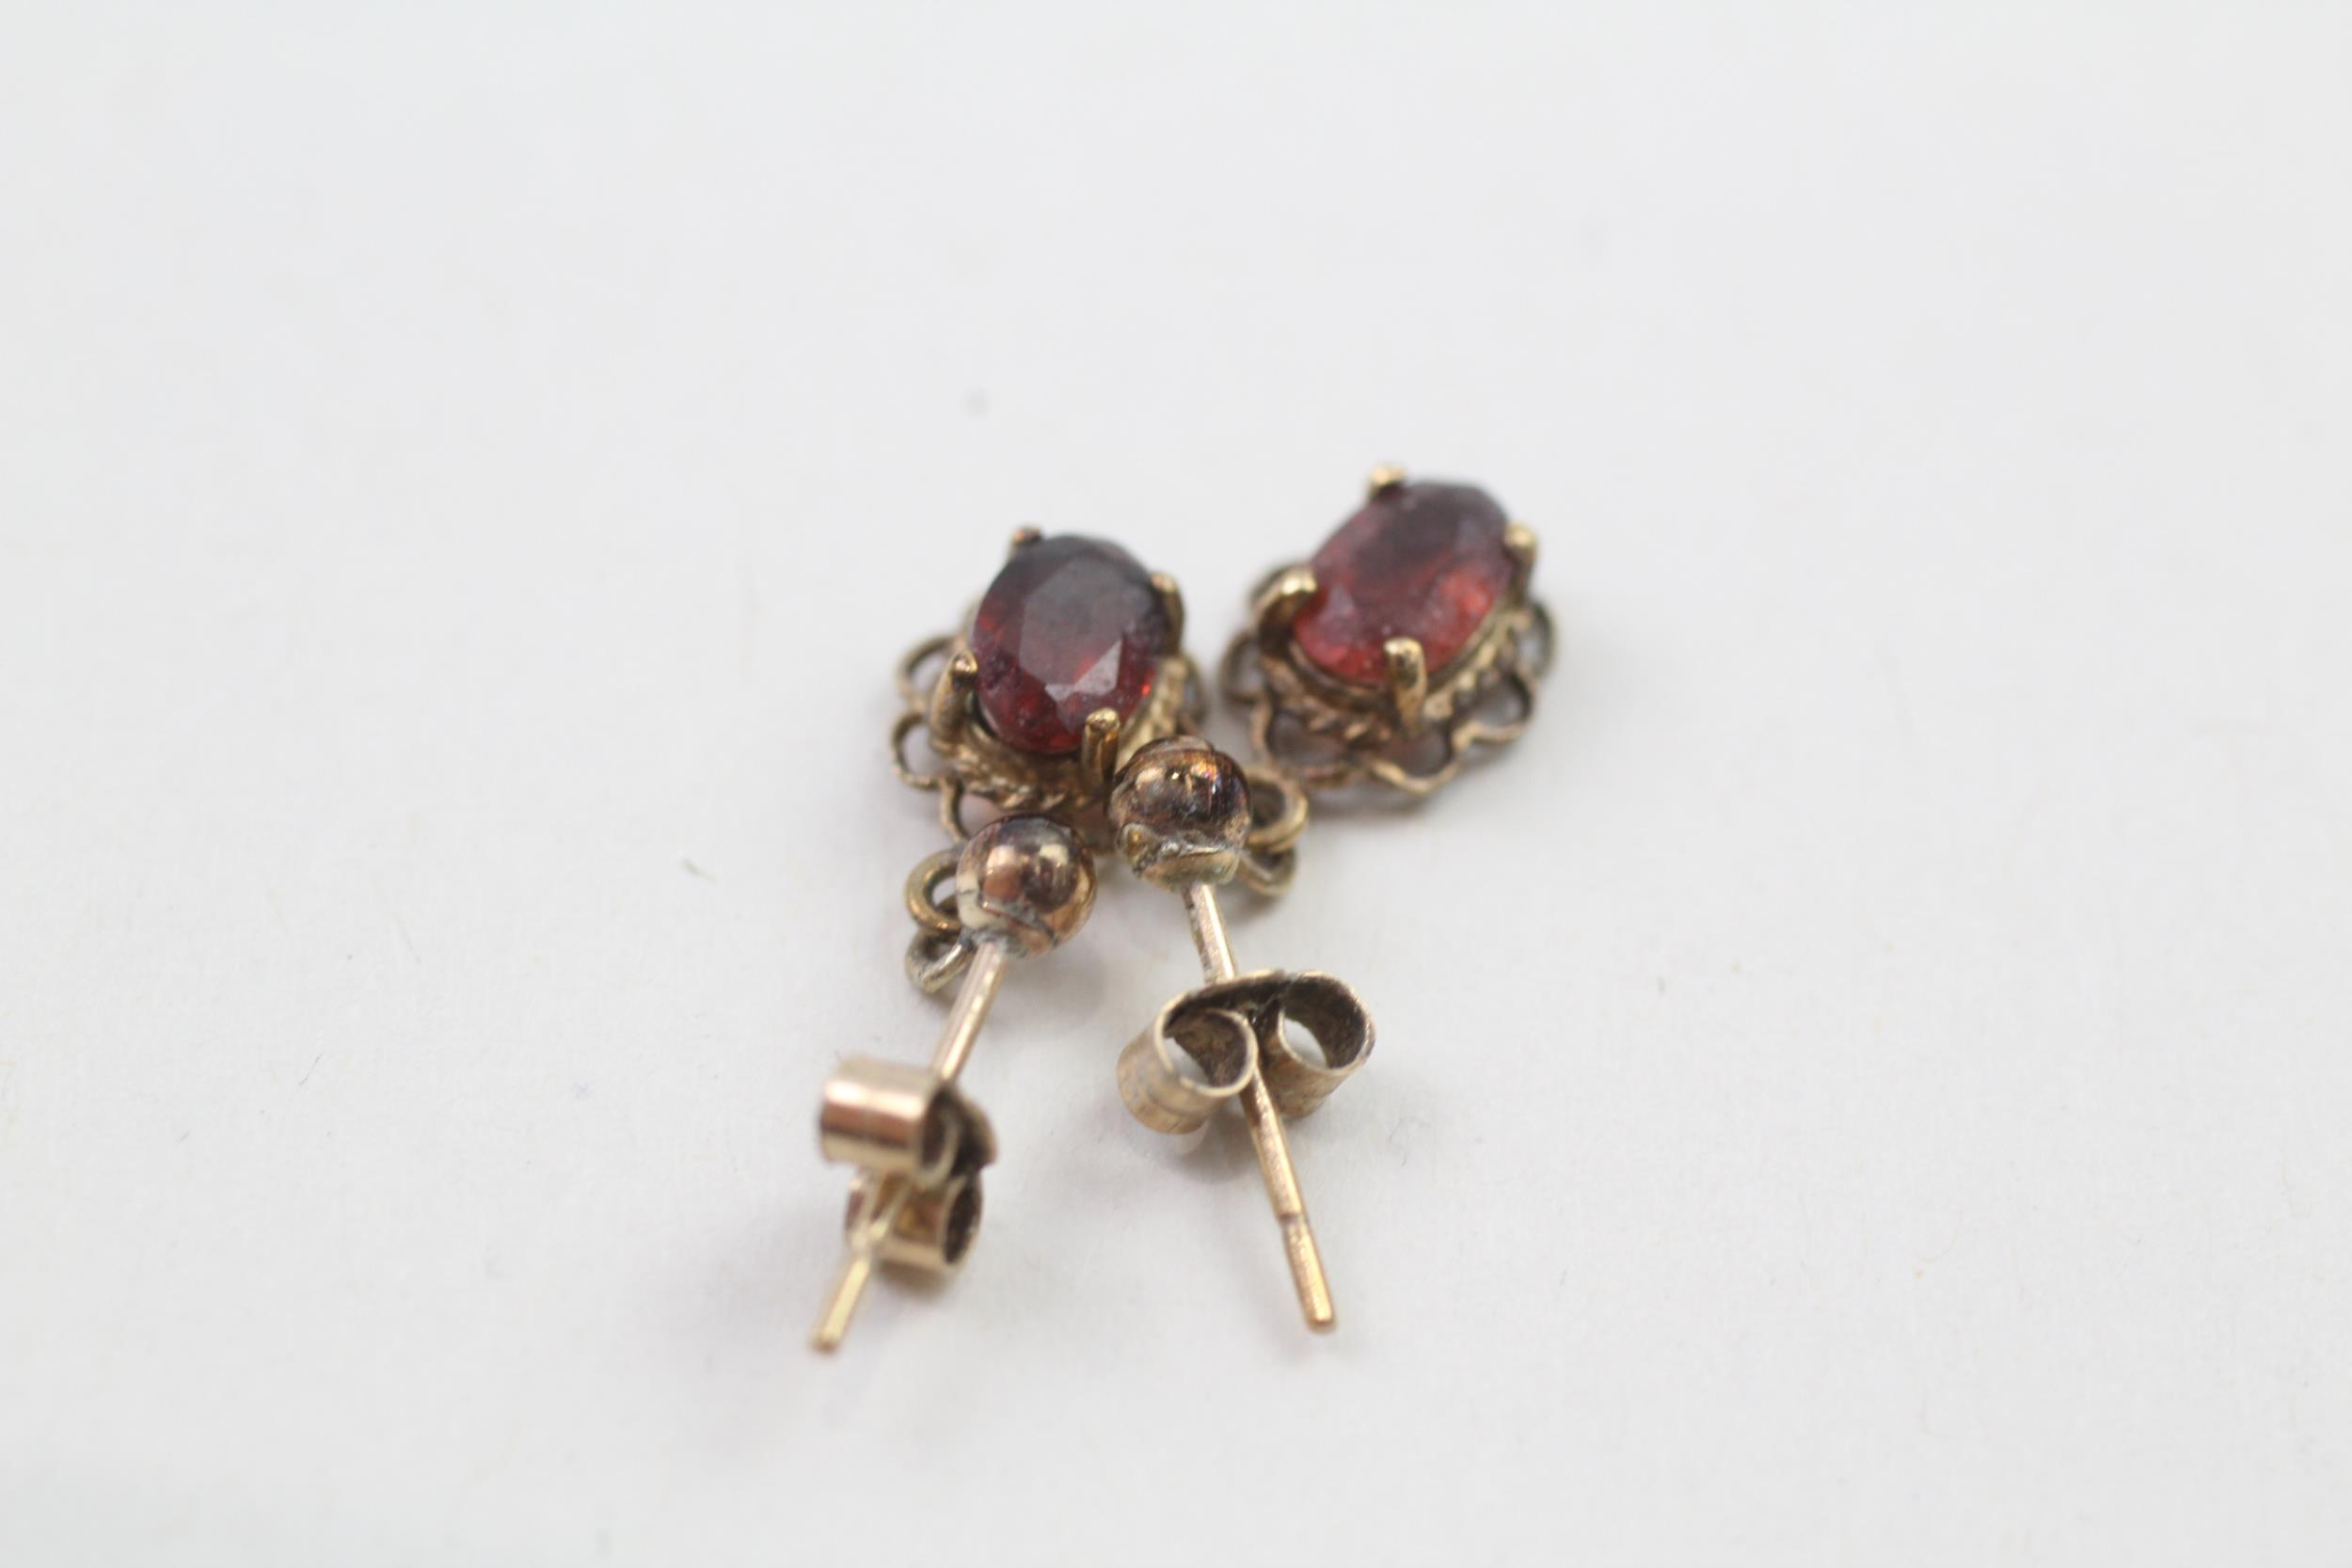 9ct gold oval cut garnet drop earrings (1.1g) - Image 3 of 4